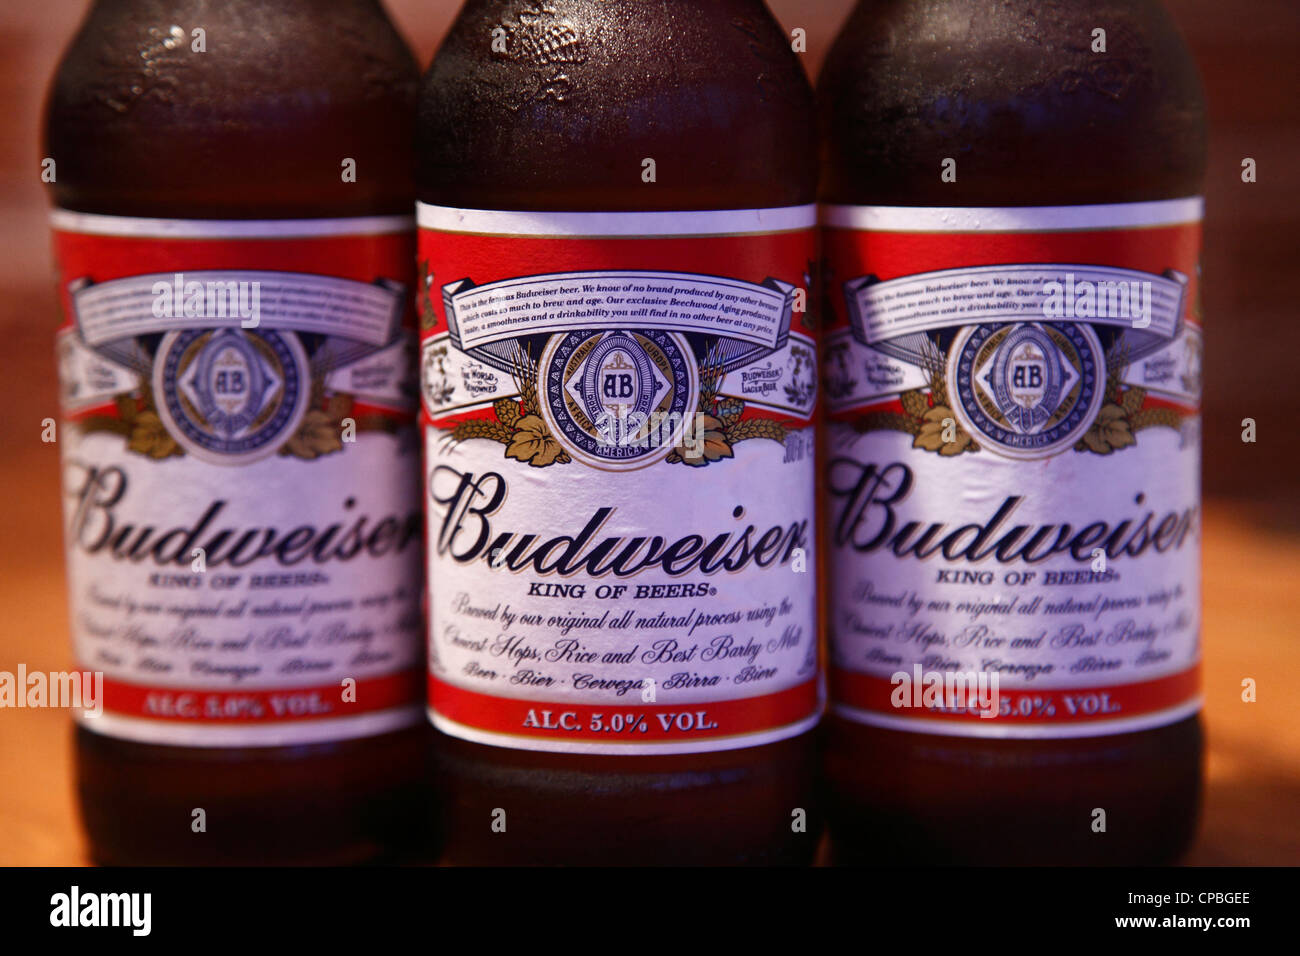 Budweiser beer bottles. Stock Photo